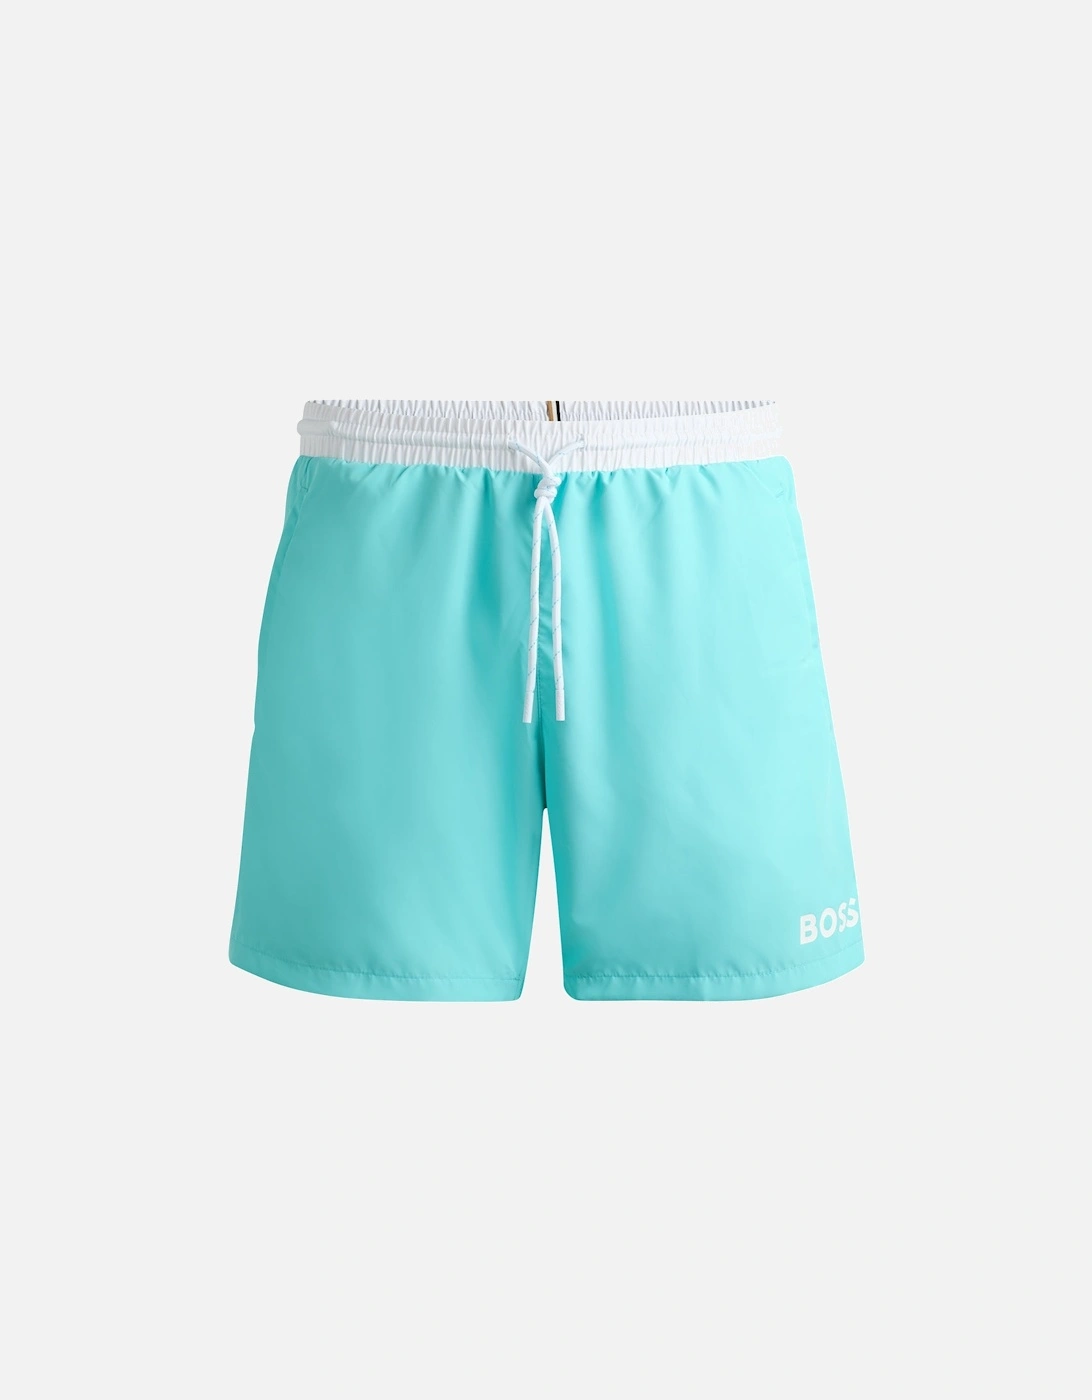 Starfish Swim Shorts, Aqua Blue, 2 of 1